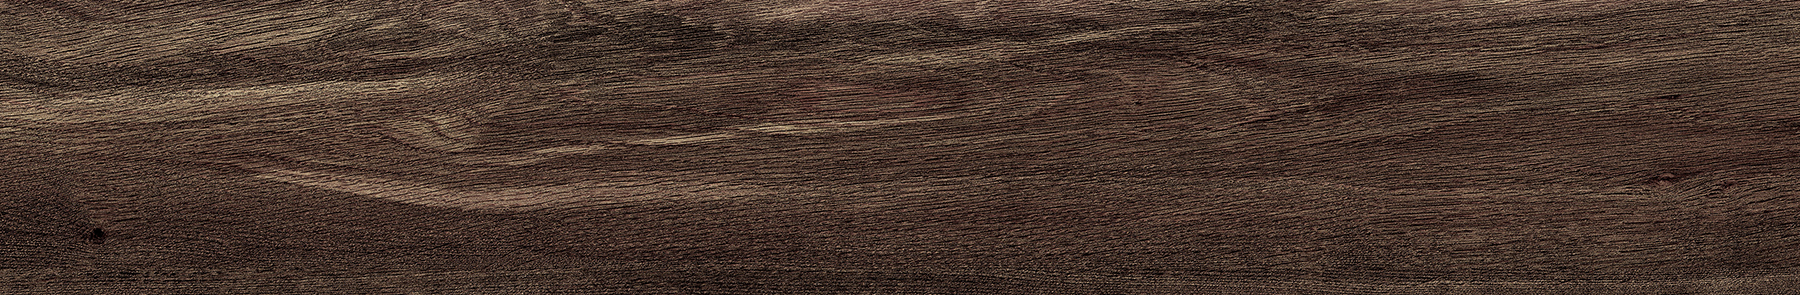 EW1092-15 川島織物セルコン 床タイル エグザウッド ティンテッドオーク 川島織物セルコン フロアタイル